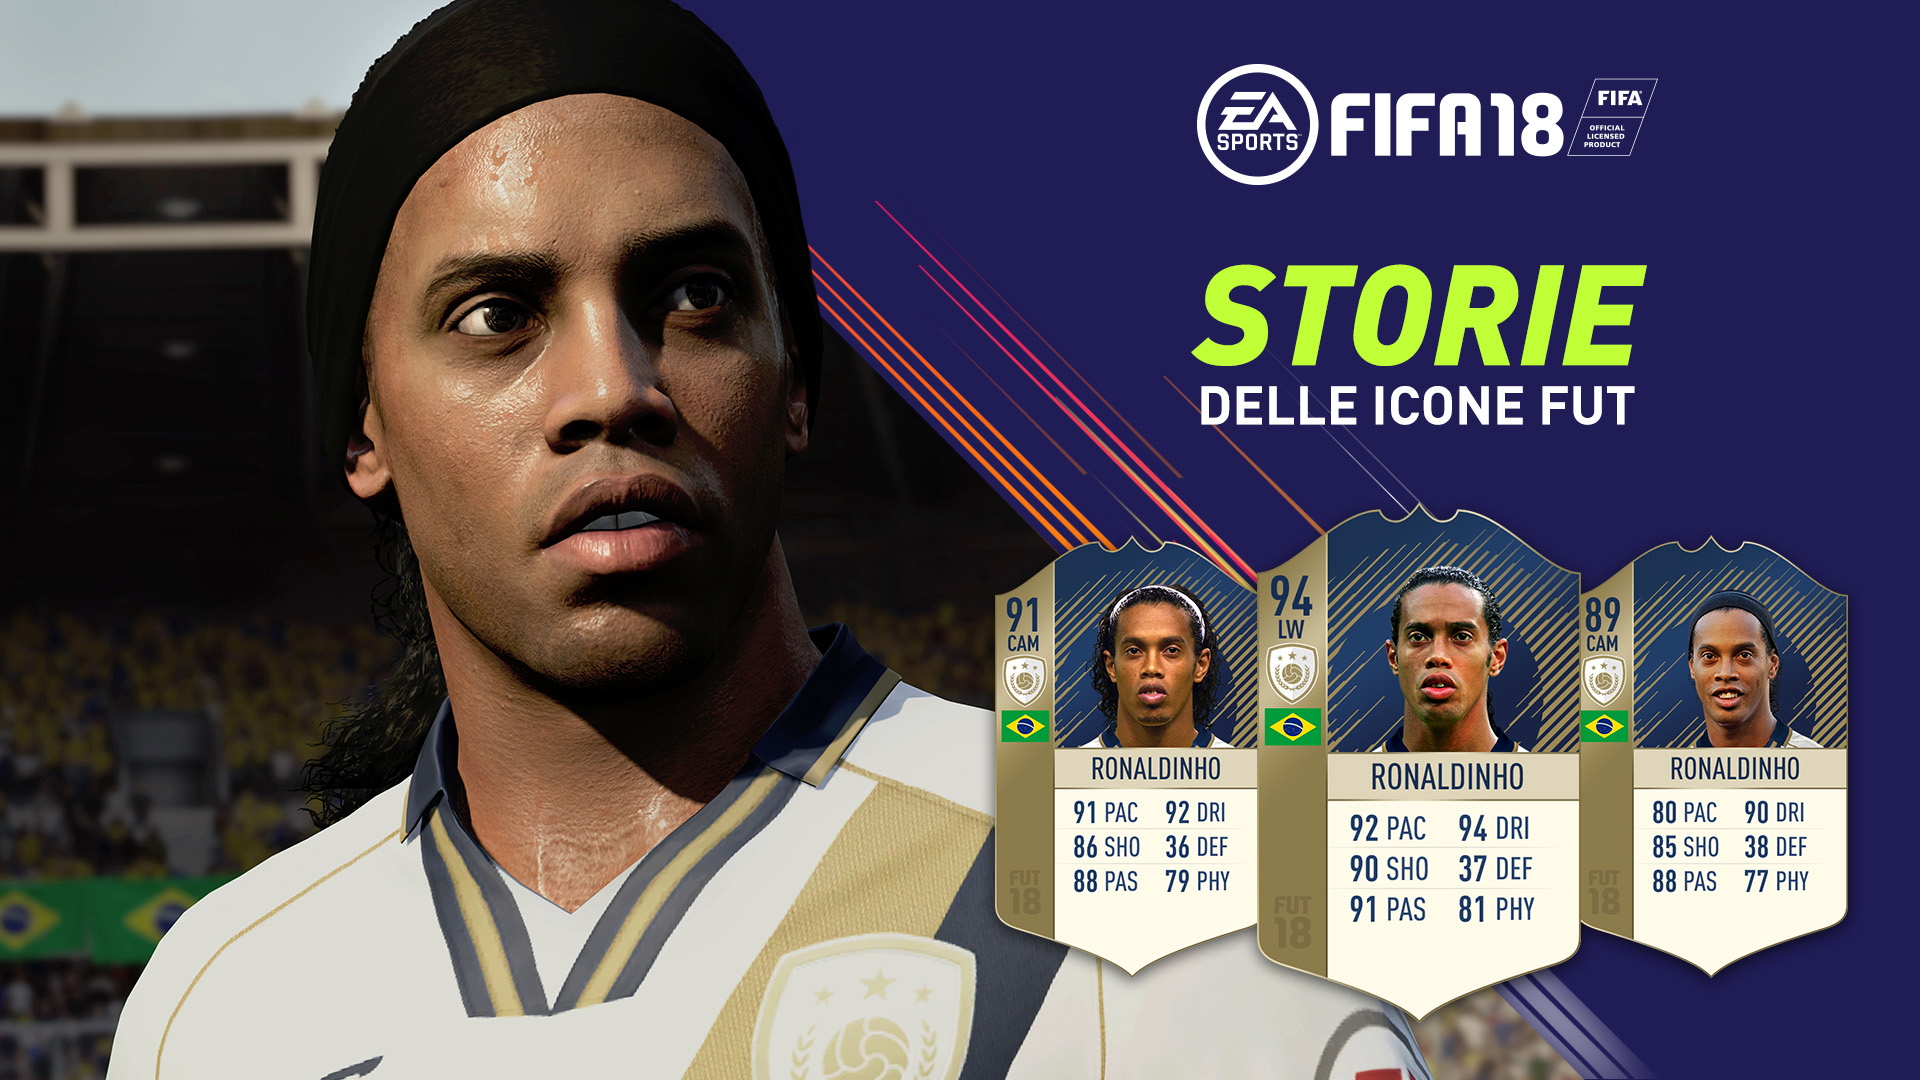 Svelate le storie delle Icone FUT in FIFA 18